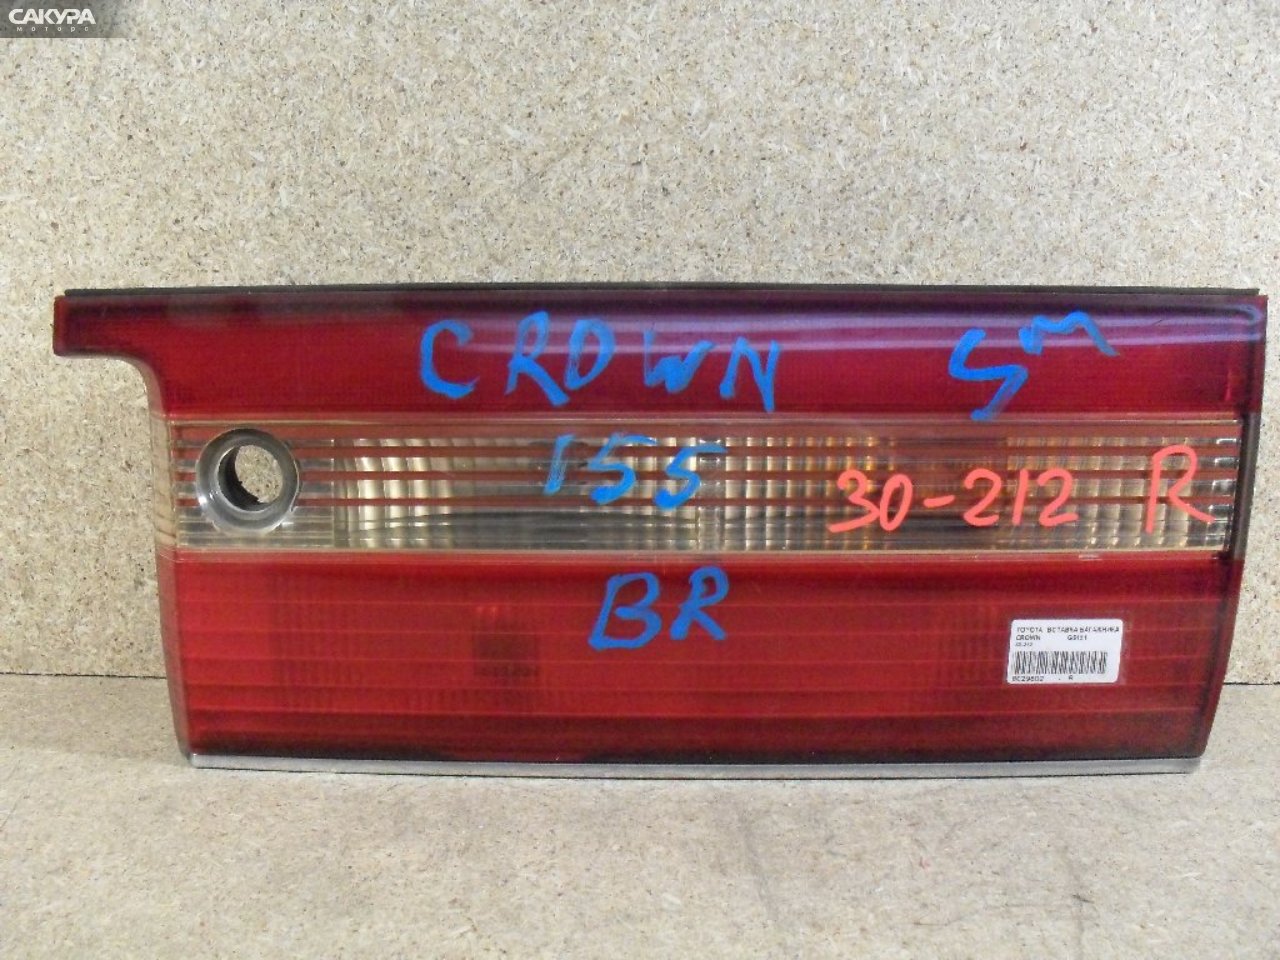 Фонарь вставка багажника правый Toyota Crown GS151 30-212: купить в Сакура Абакан.